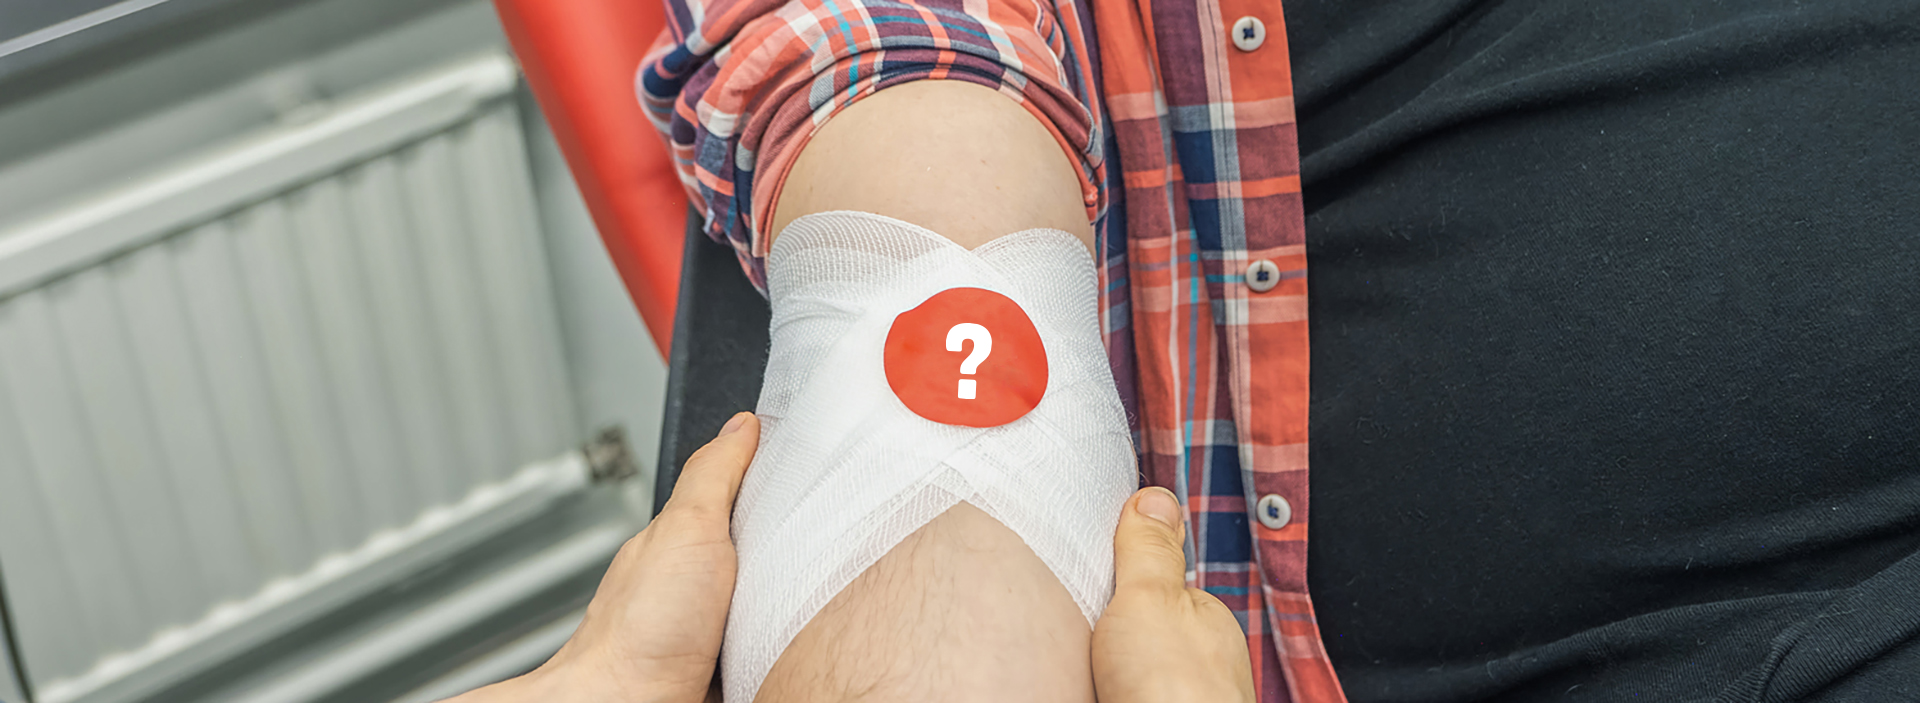 En blodgivares hand med ett frågetecken på ett bandageklistermärke.